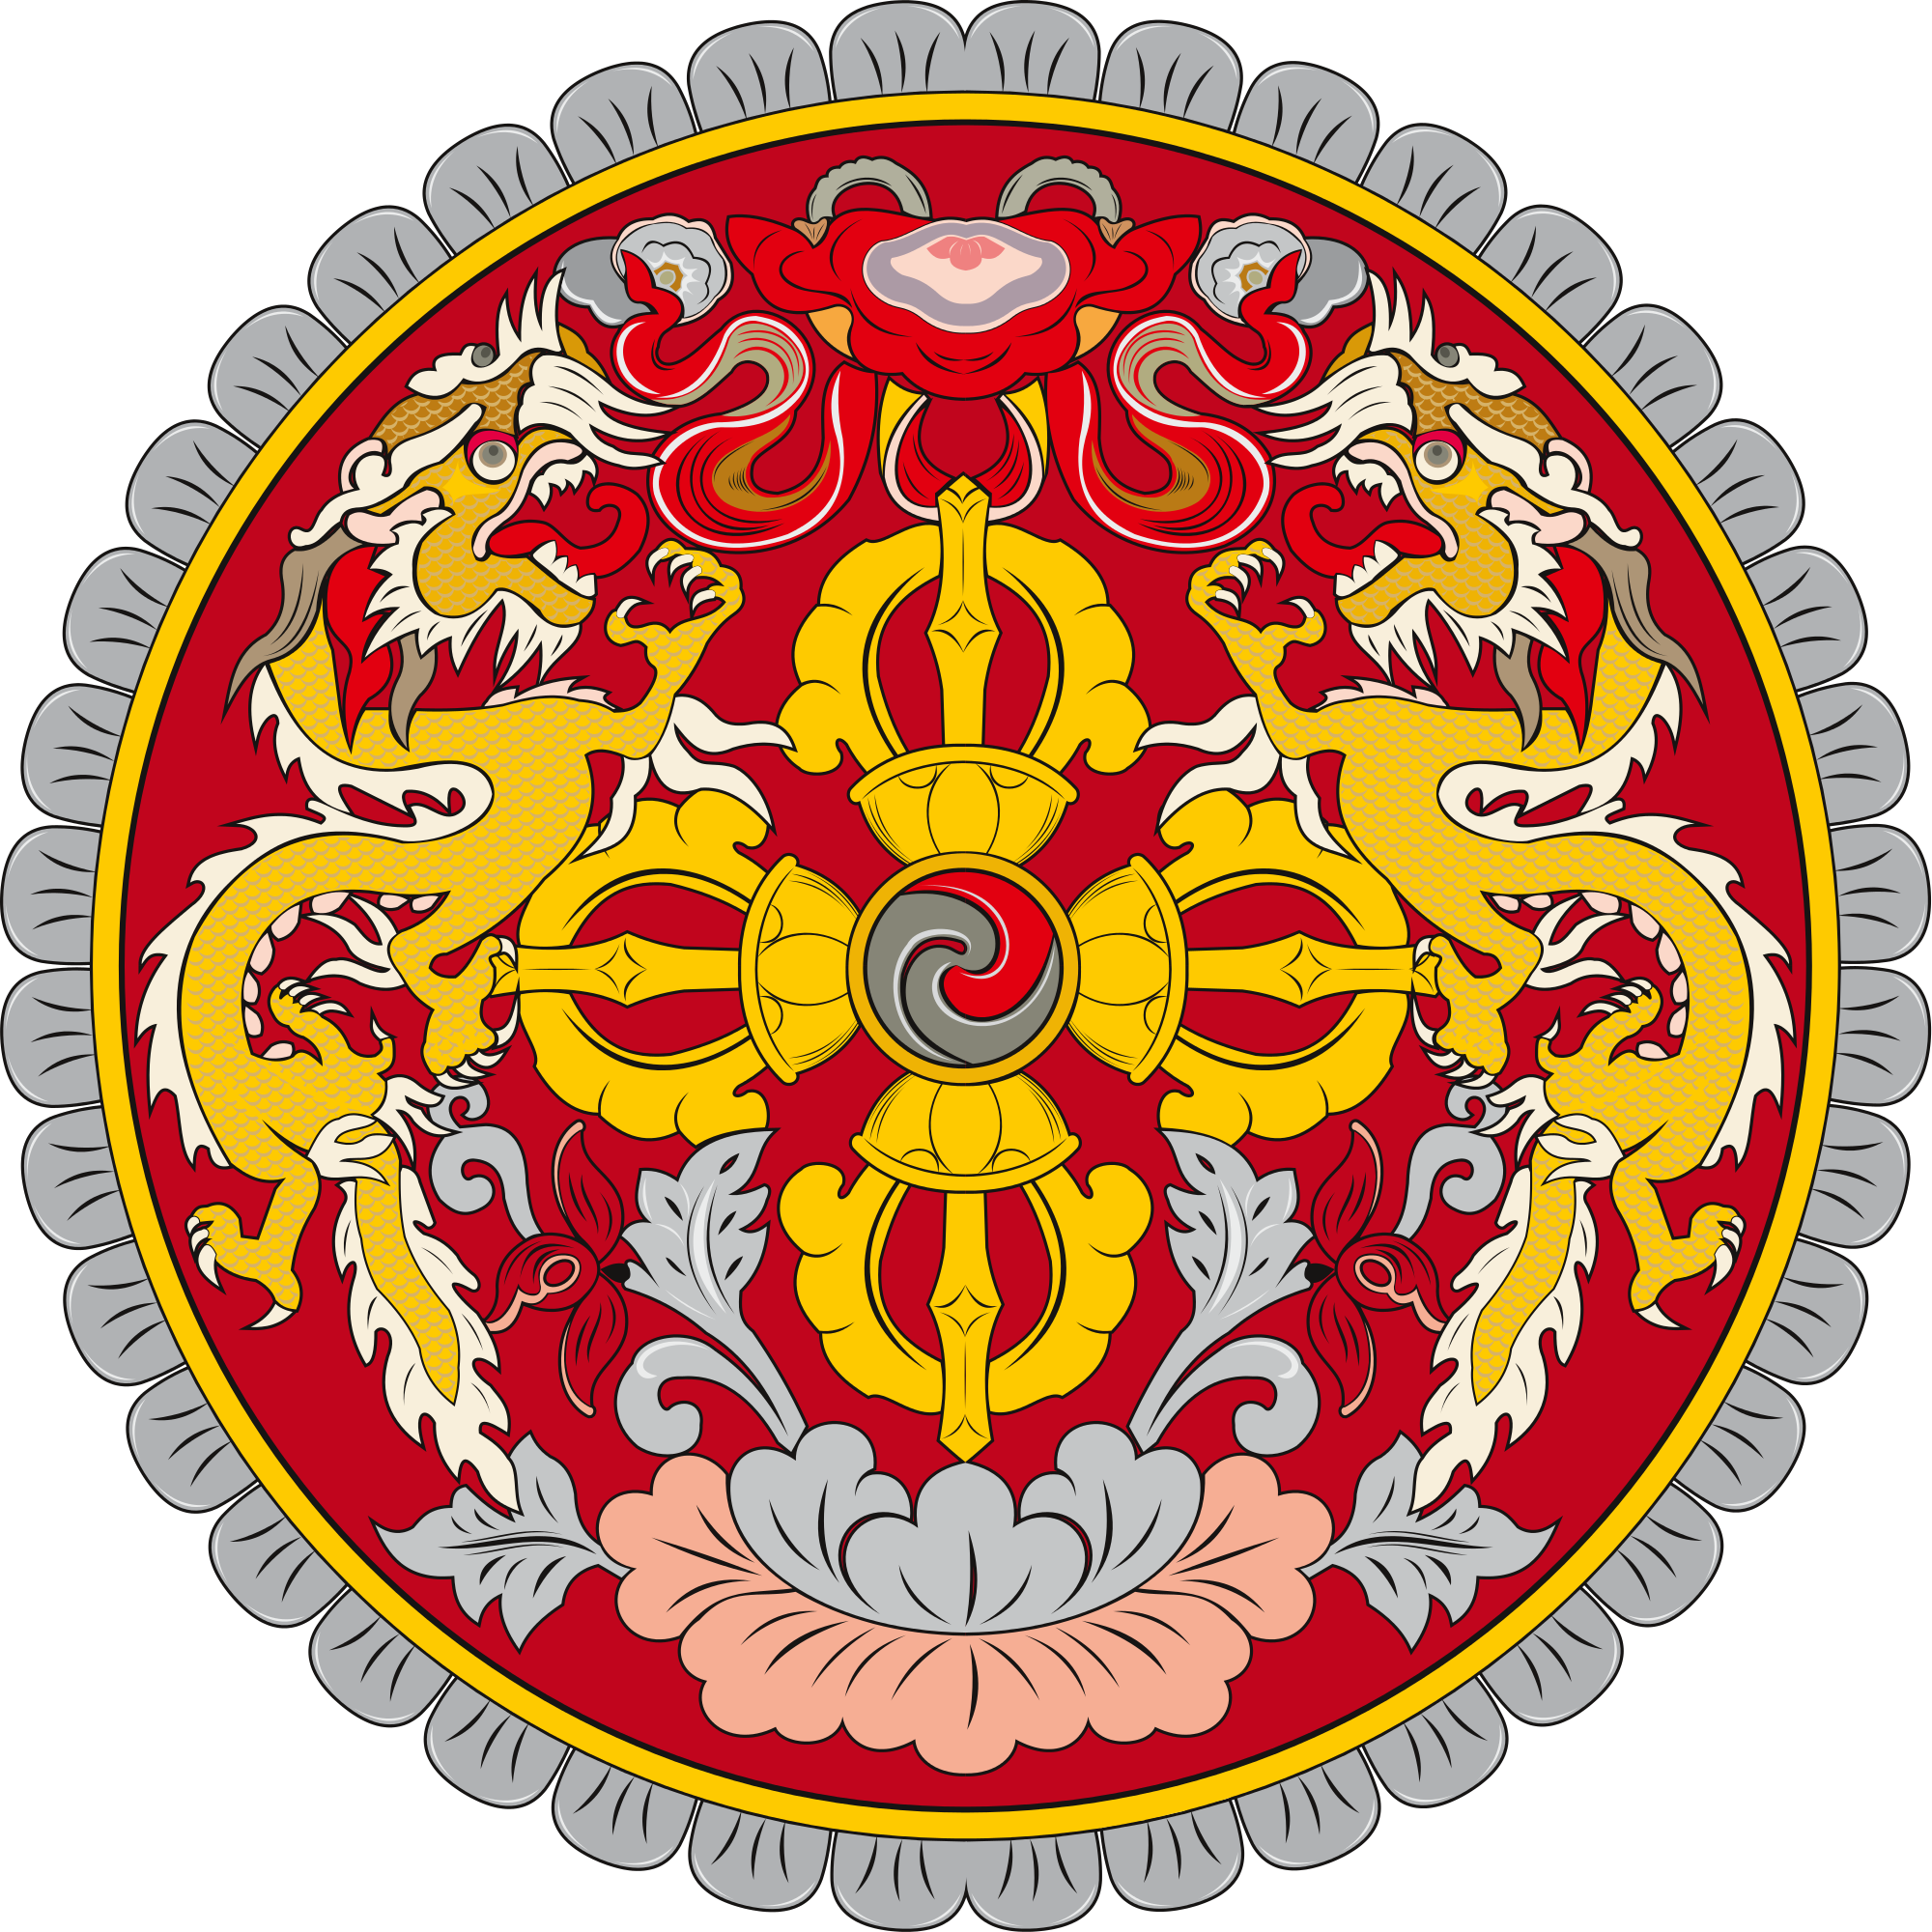 Bhutan Coat of Arms